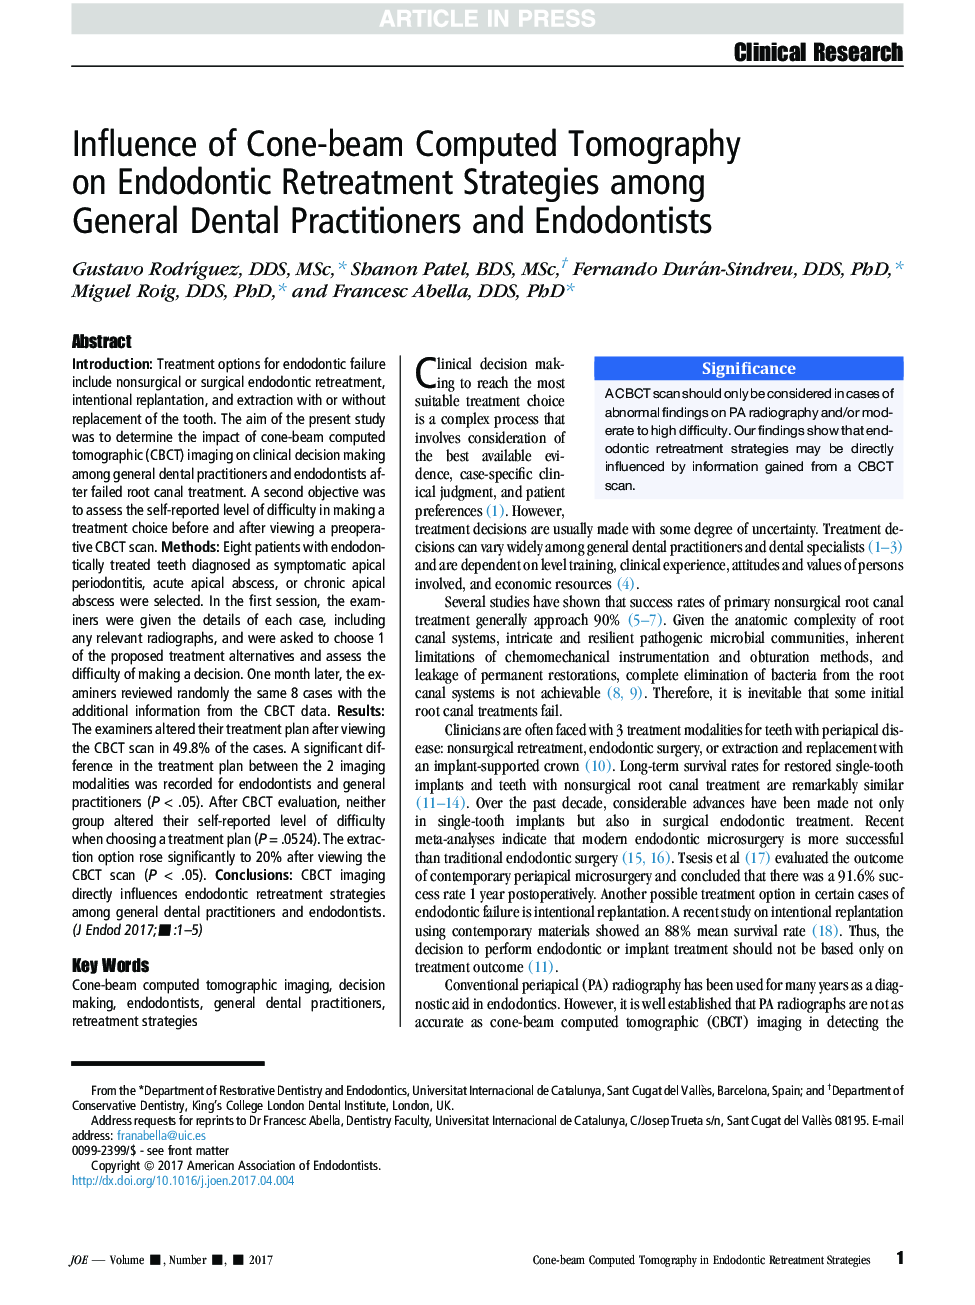 تأثیر توموگرافی کامپیوتری پرتوهای کروی بر راهبردهای بازتوانی اندودنتیکس در میان پزشکان عمومی دندانپزشکی و دندانپزشکان 